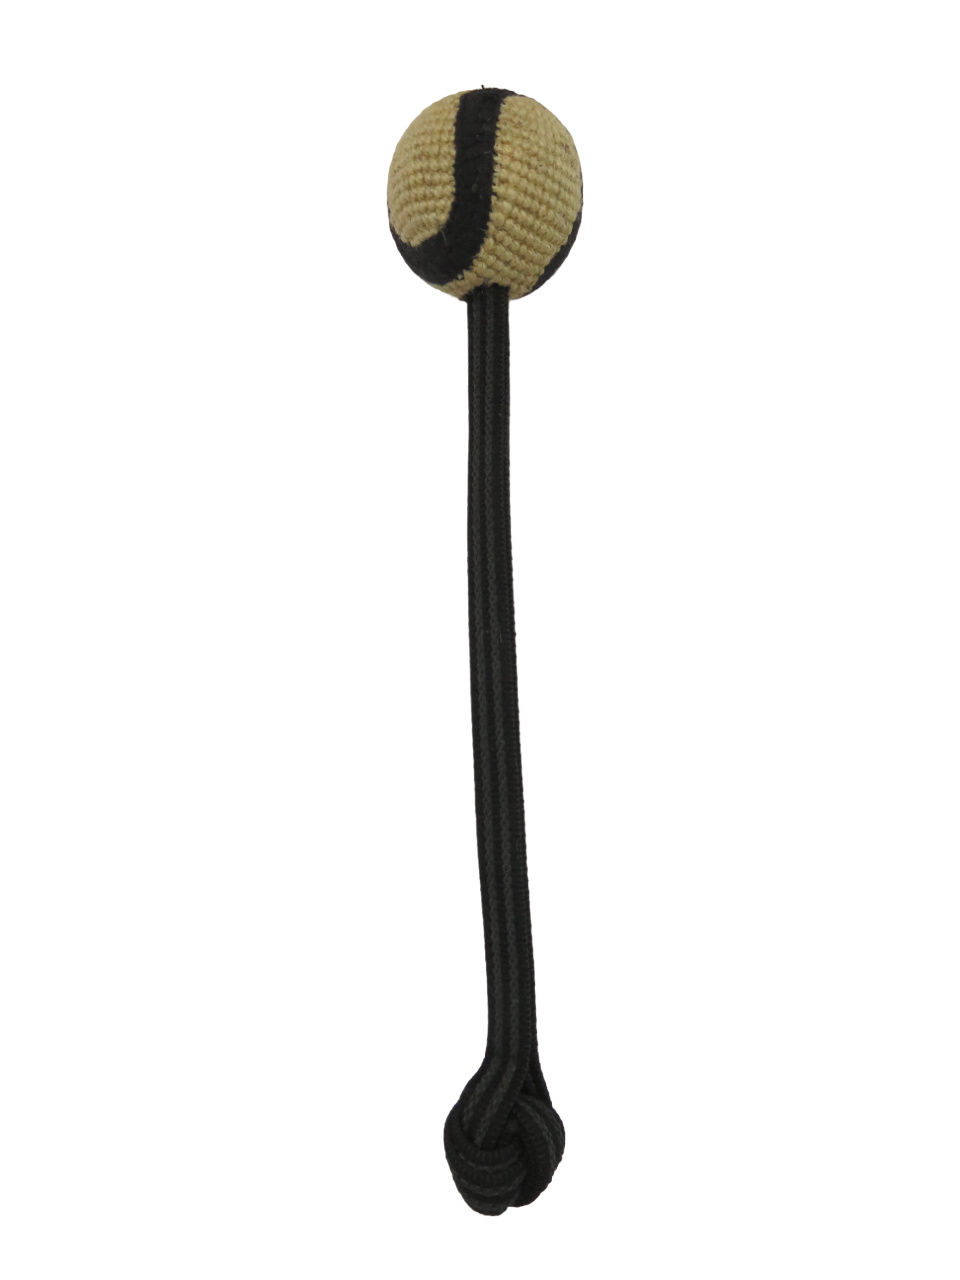 BOW WOW BOW WOW мяч джутовый с прорезиненной ручкой (натуральный) (240 г) bow wow bow wow замшевая кожаная игрушка с веревочной ручкой 190 г